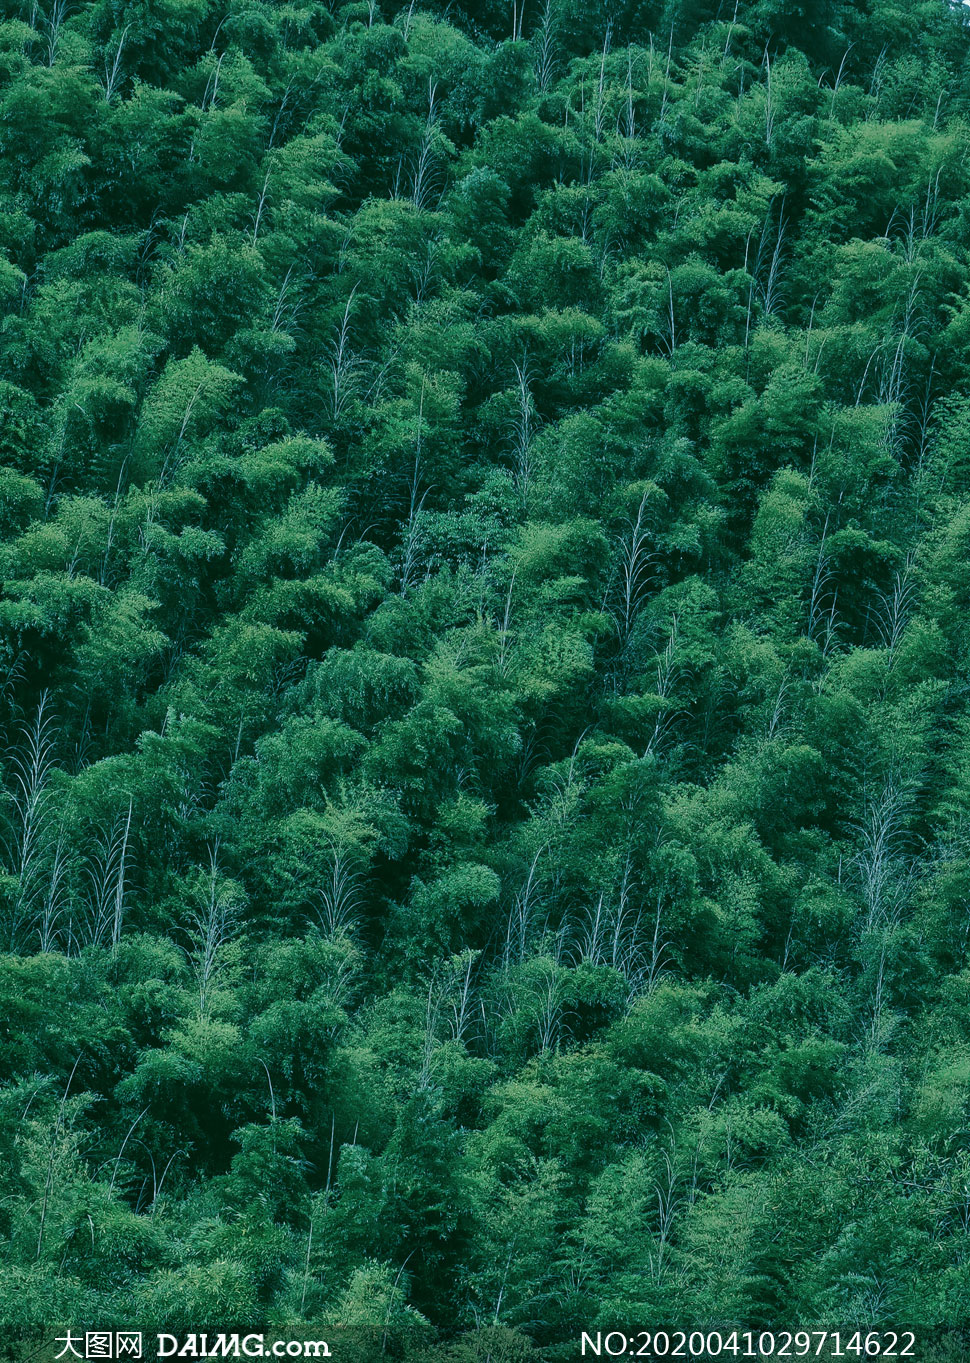 大山上郁郁葱葱的树林摄影高清图片